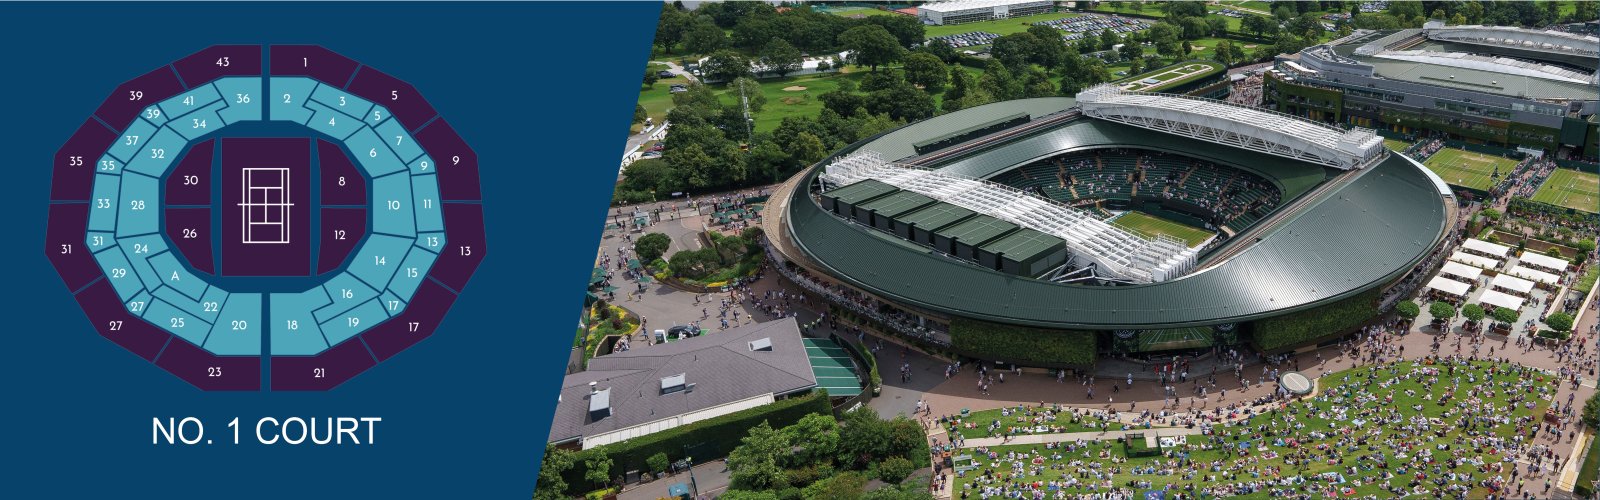 Events International - Wimbledon Tennis No1 Court 